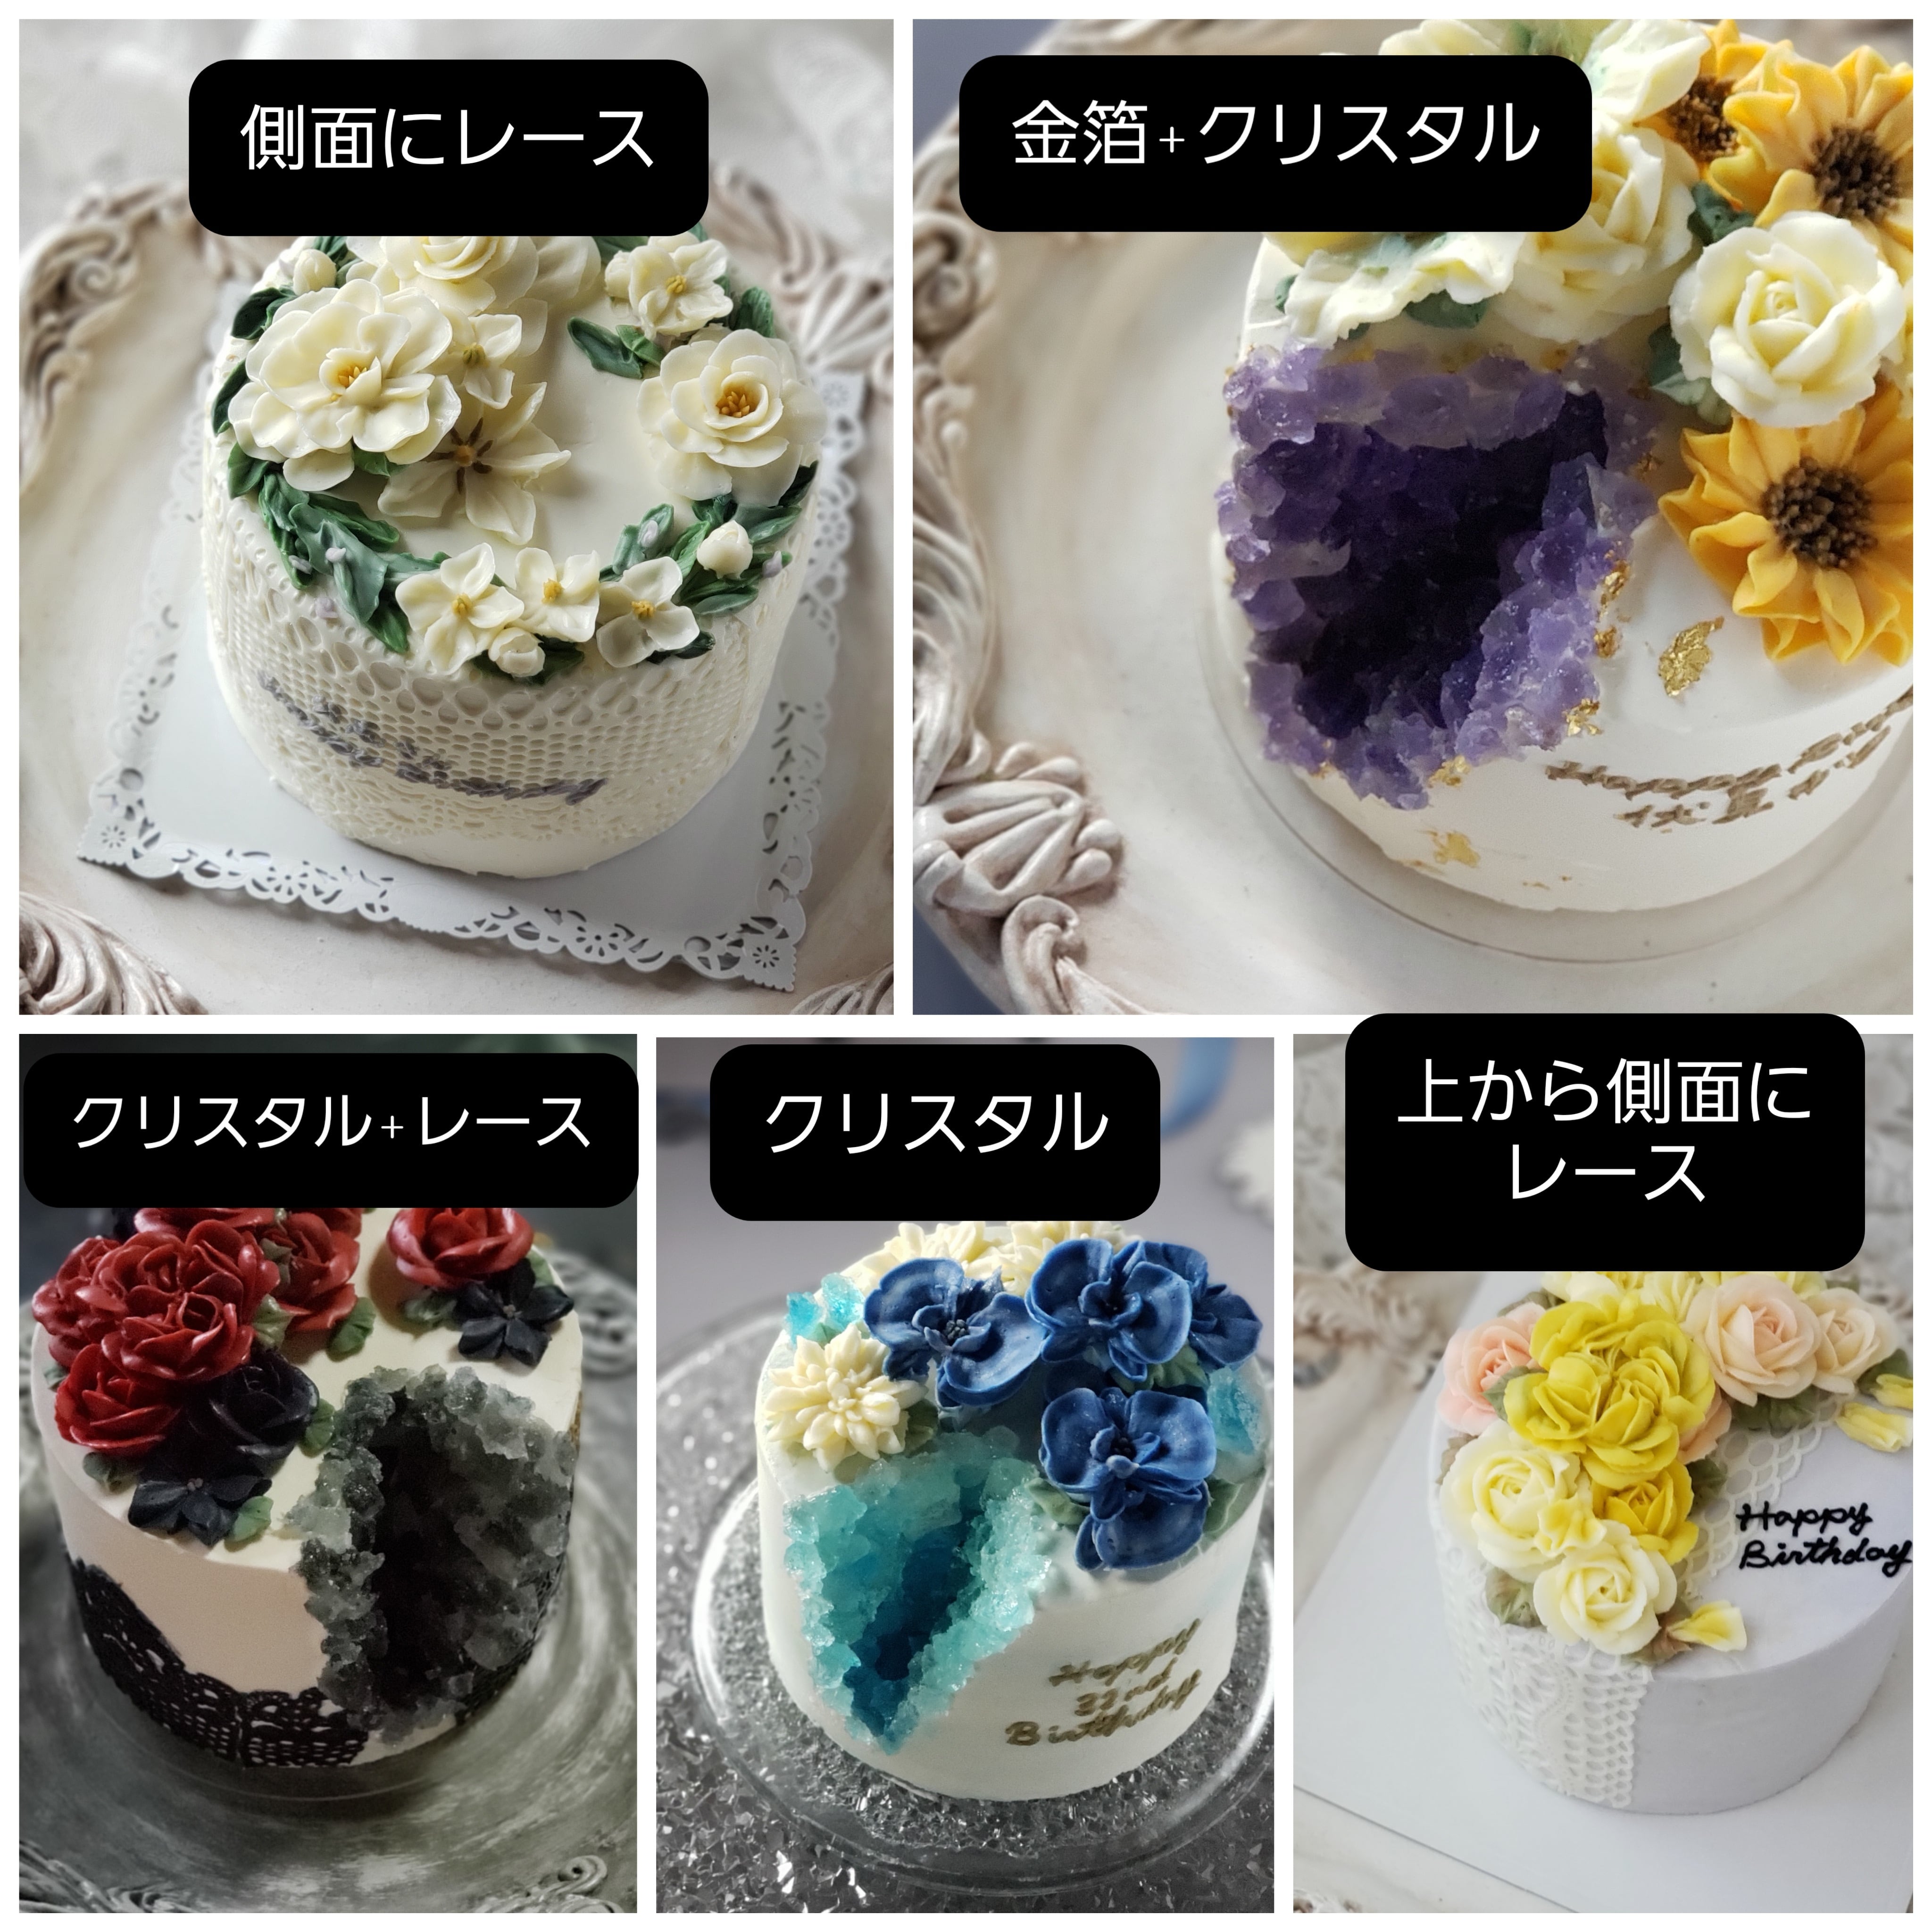 NEW売り切れる前に☆ オーダー受け付け 2段装飾ケーキ 誕生日ケーキ